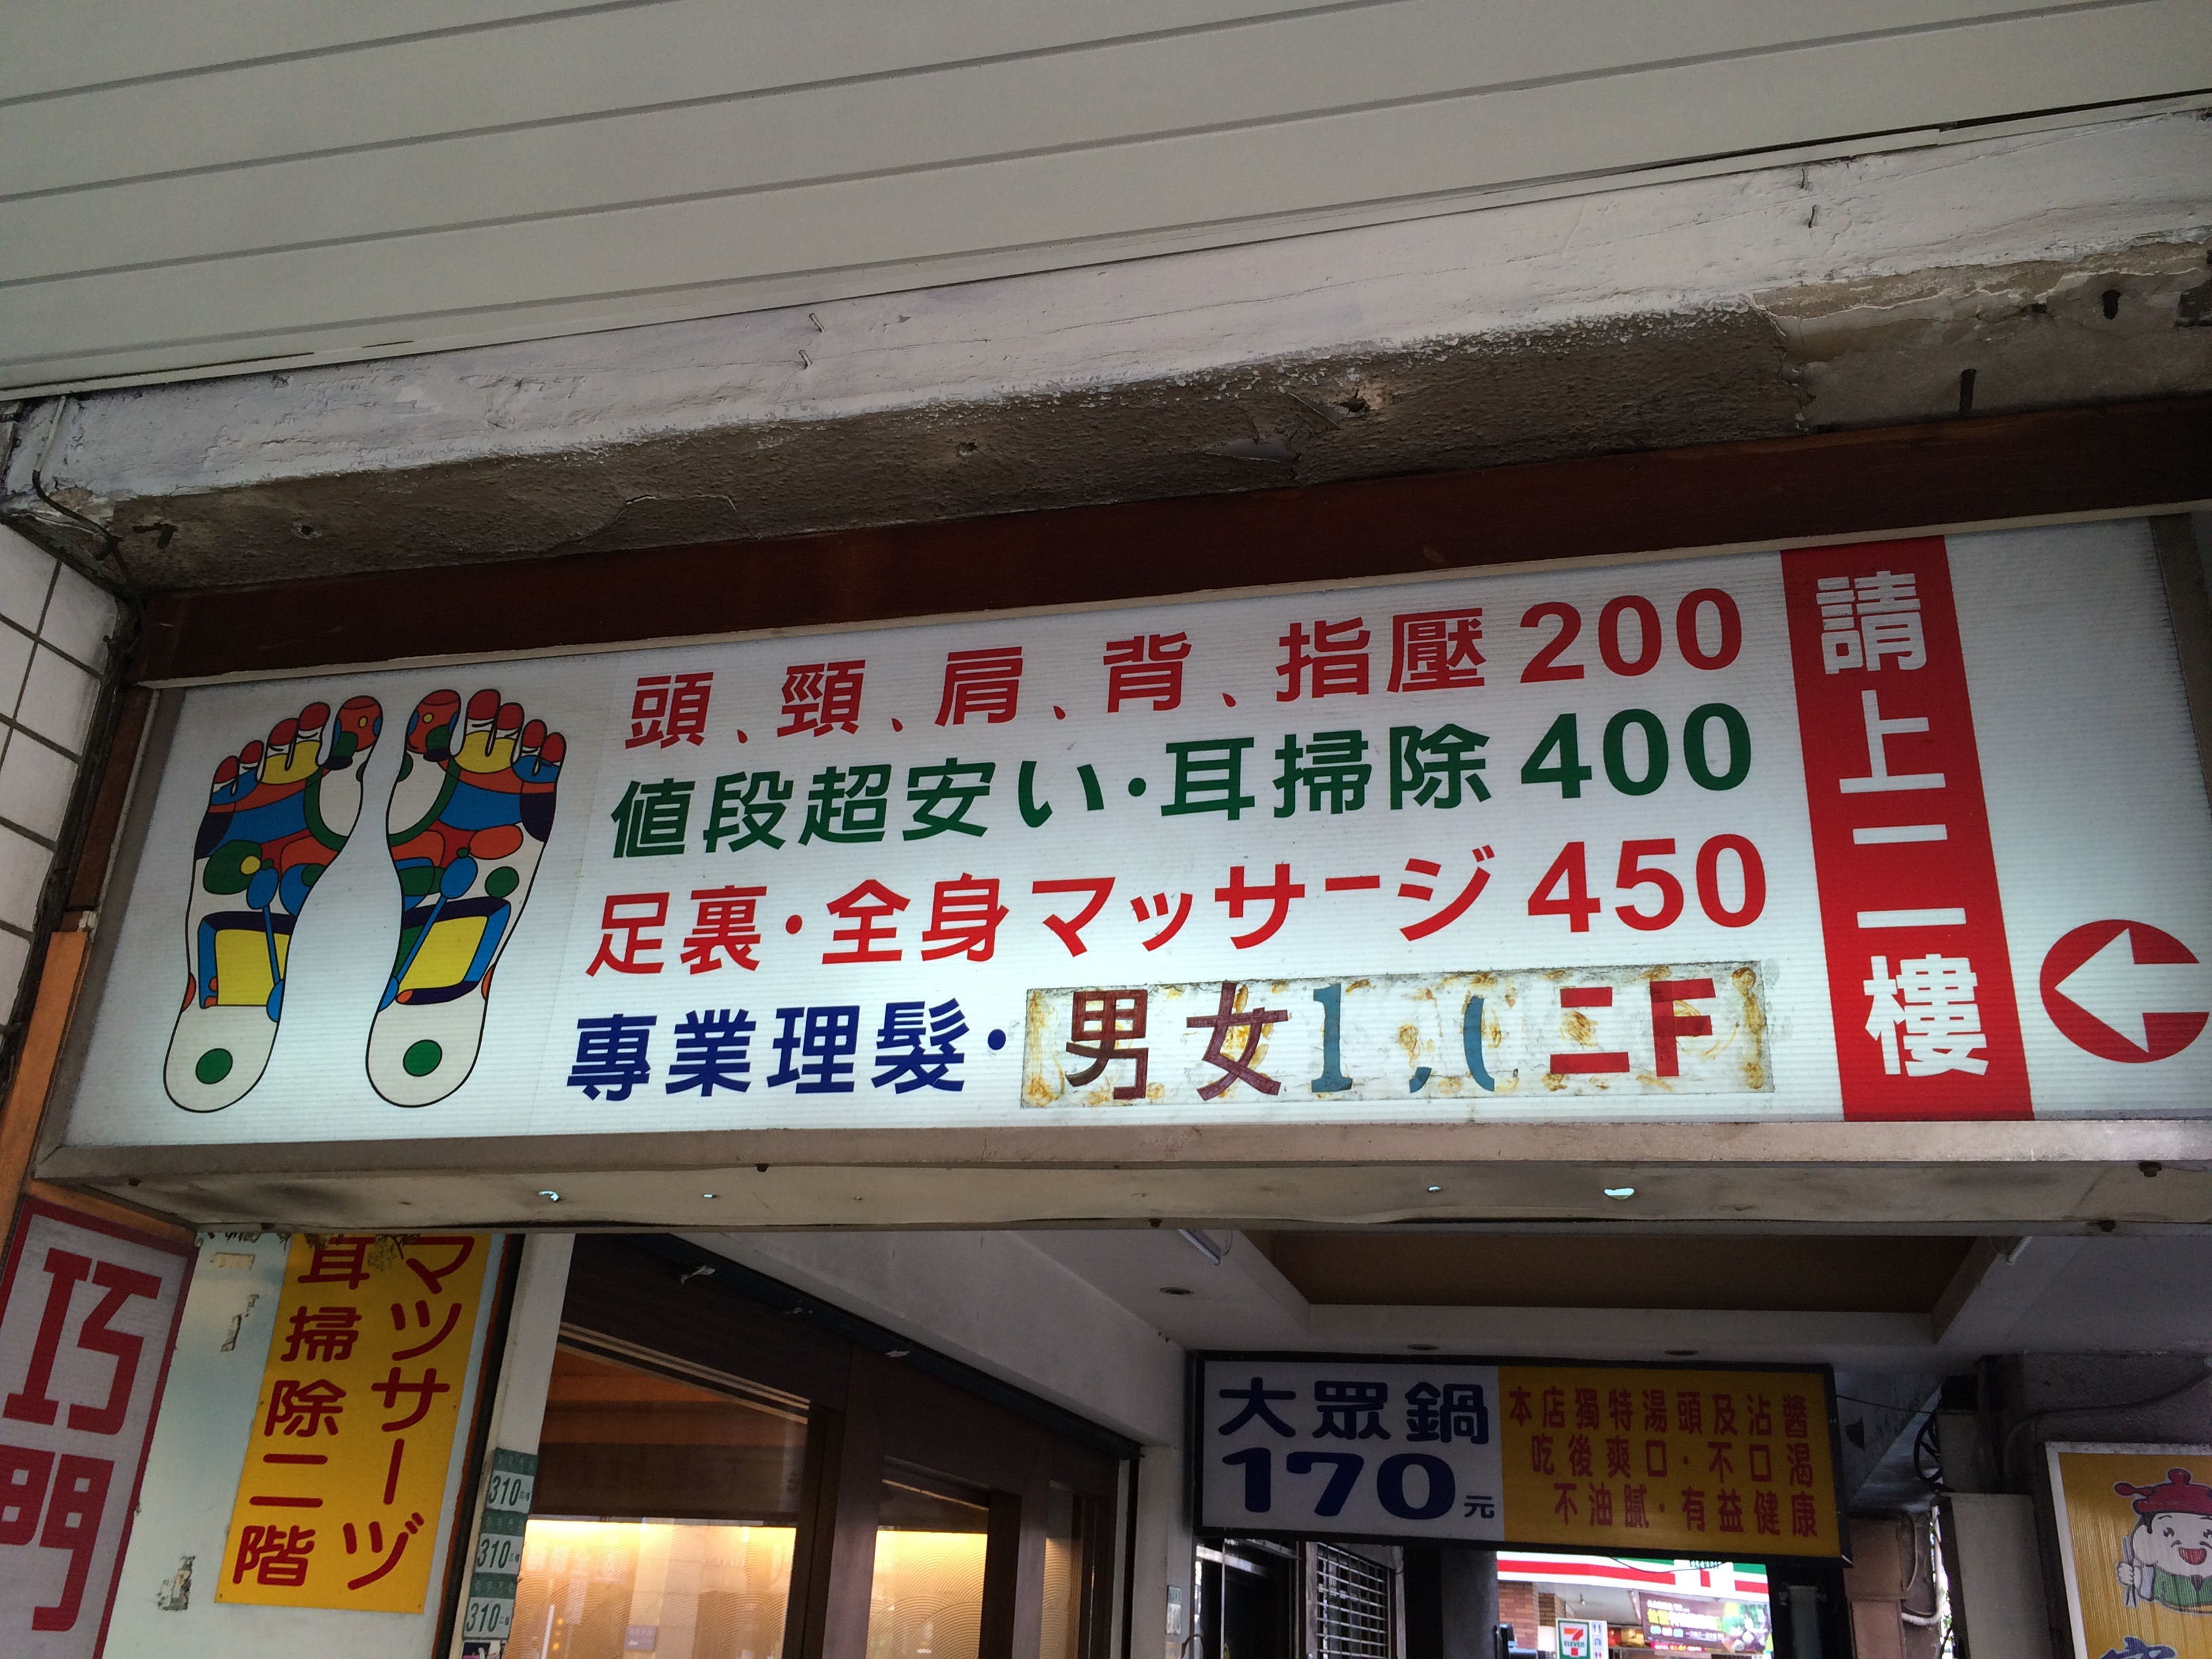 ブログのみ更新 台北に行くなら耳かき屋に行こう 耳かき極めて30年 東方三郎 の店で耳かきをやってみた スタジオスモーキー 旅と街歩き時々出会い